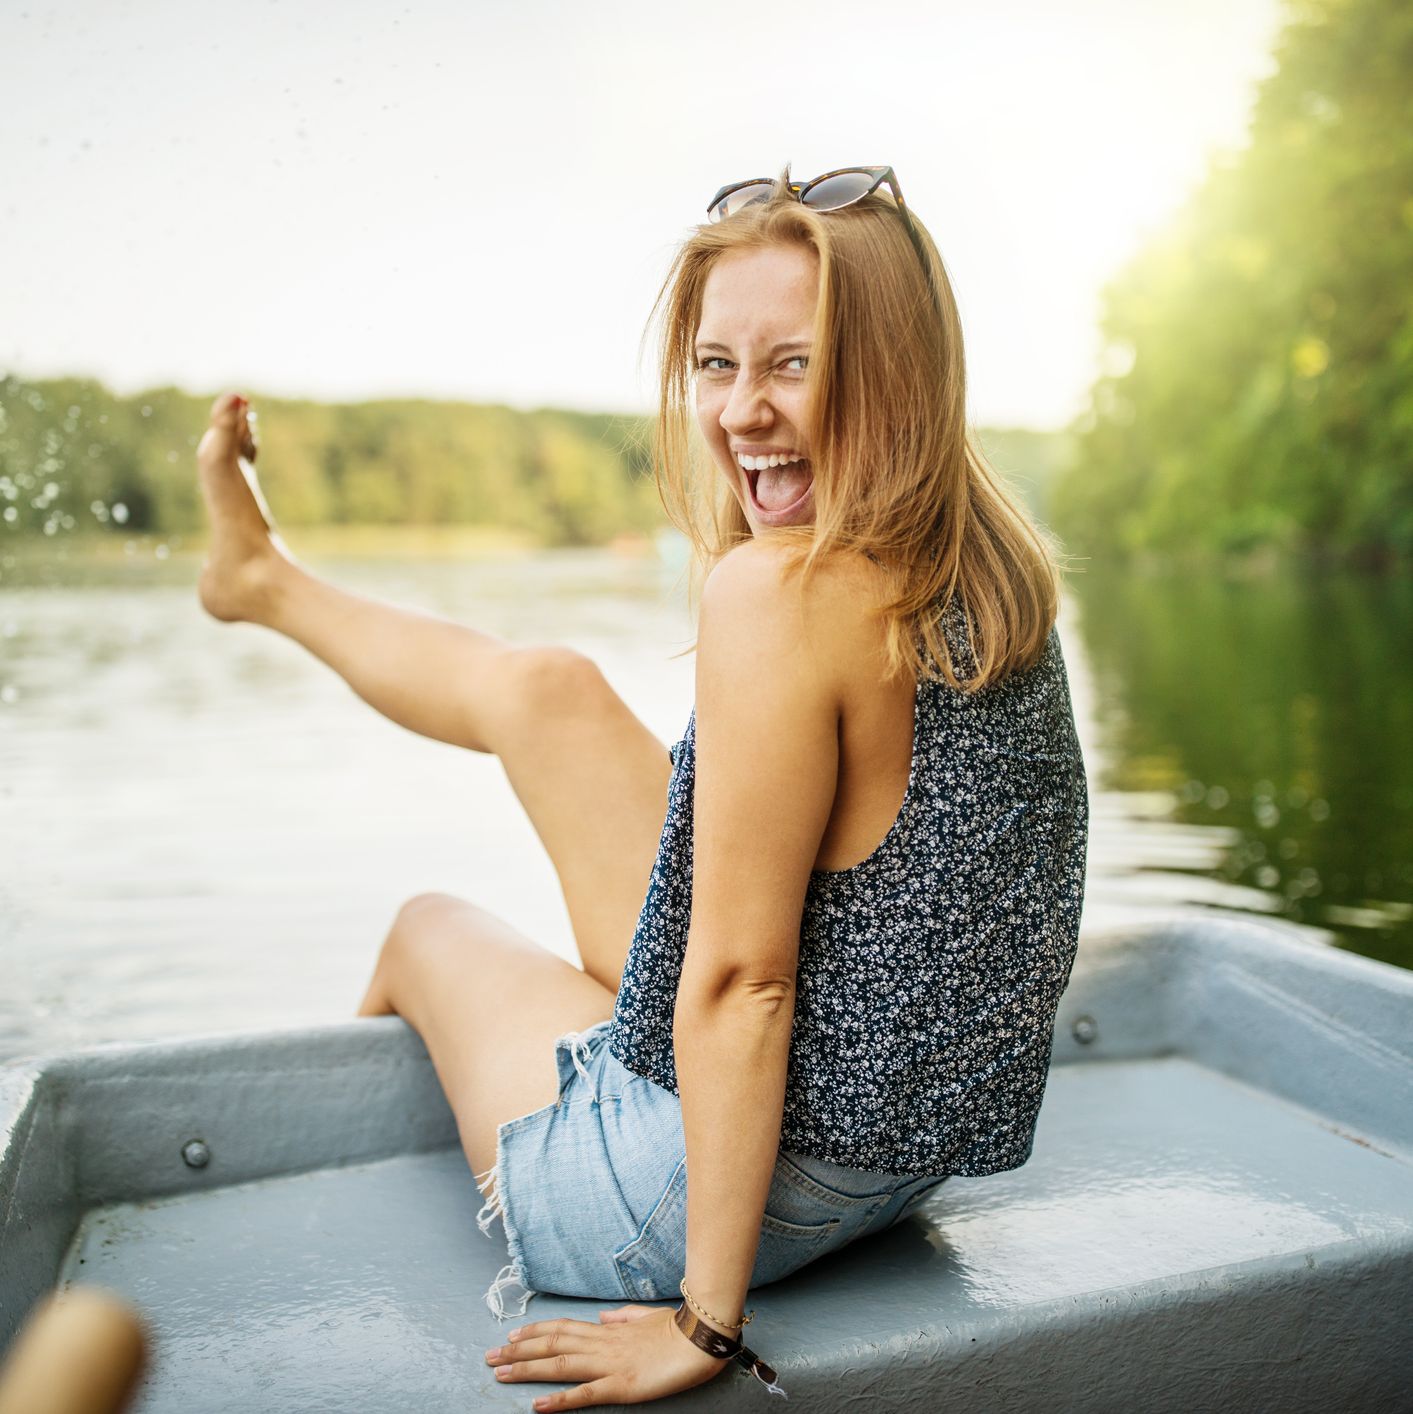 beautiful female on boat ride in lake having fun